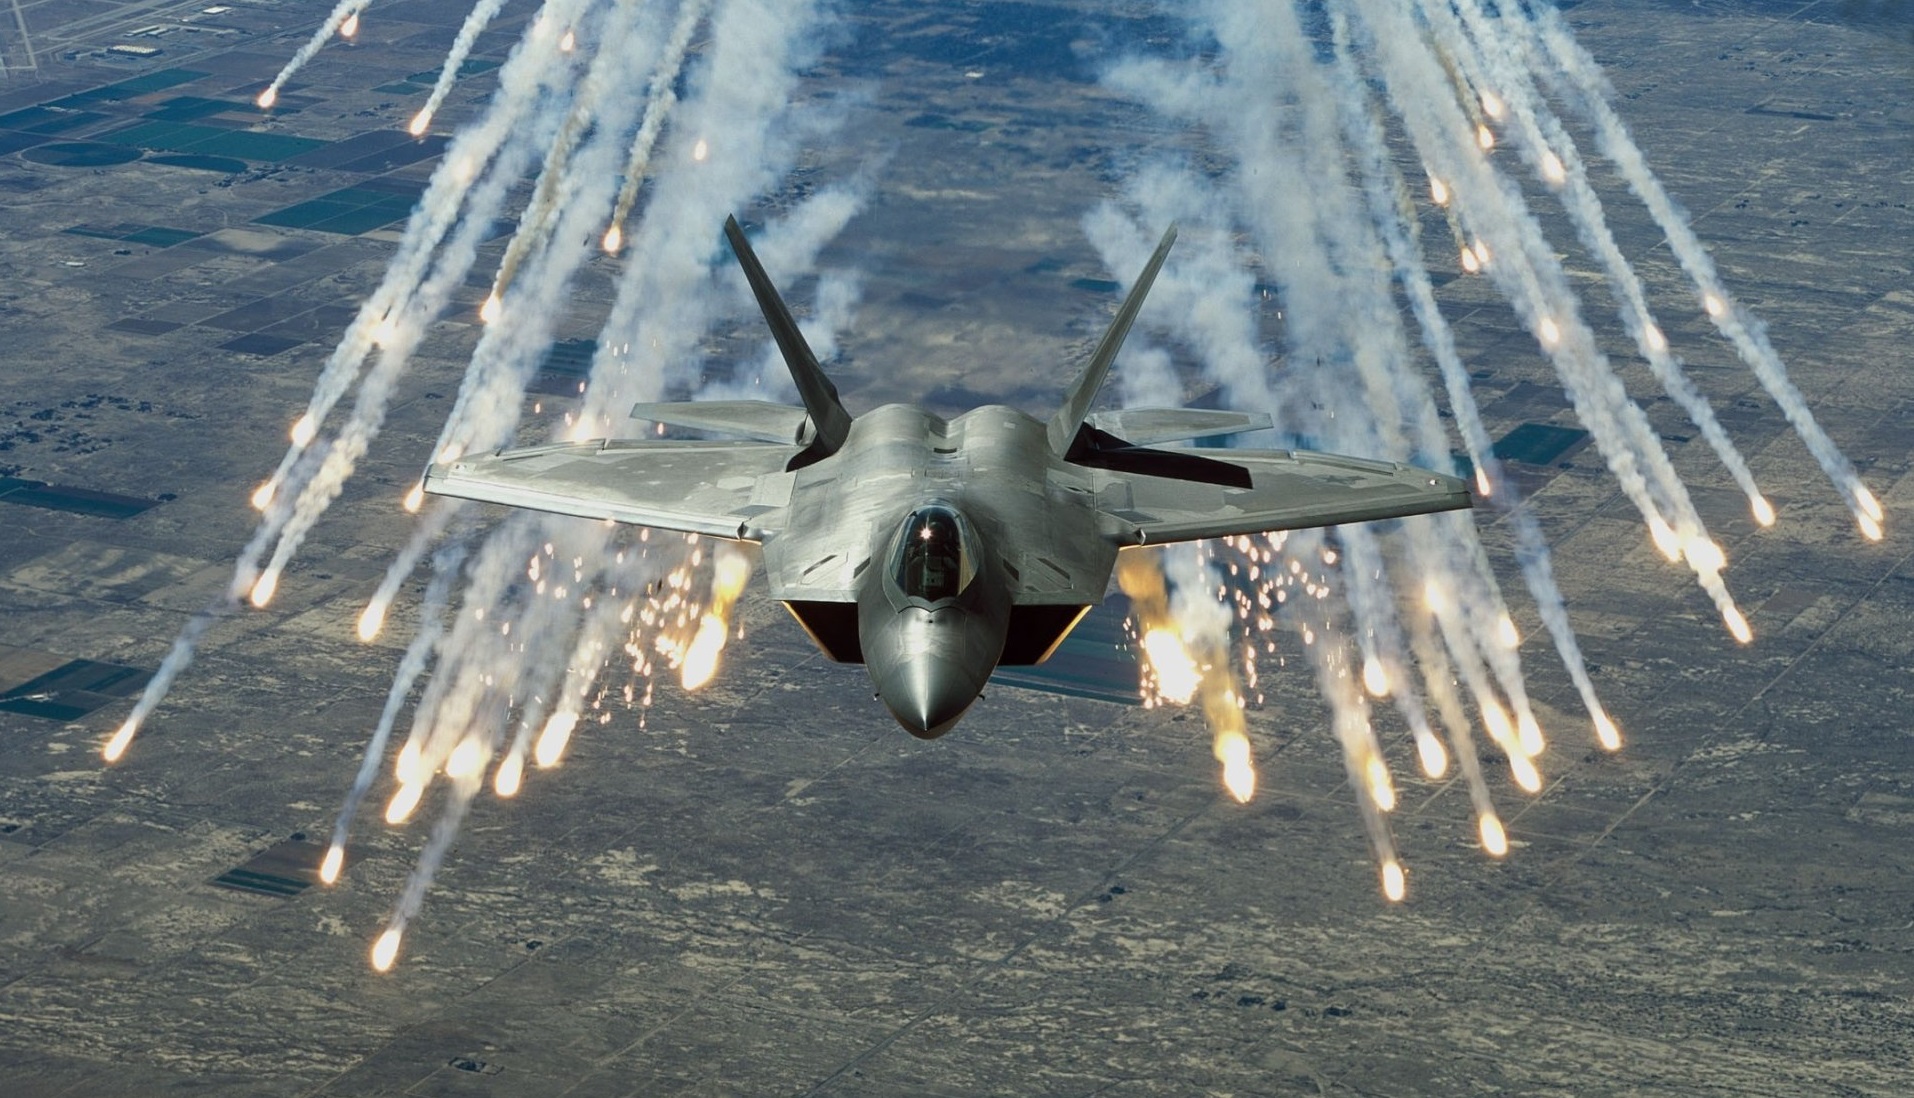 Les États-Unis veulent mettre le F-22 Raptor hors service afin de libérer du budget pour un chasseur de nouvelle génération qui coûtera des centaines de millions de dollars.